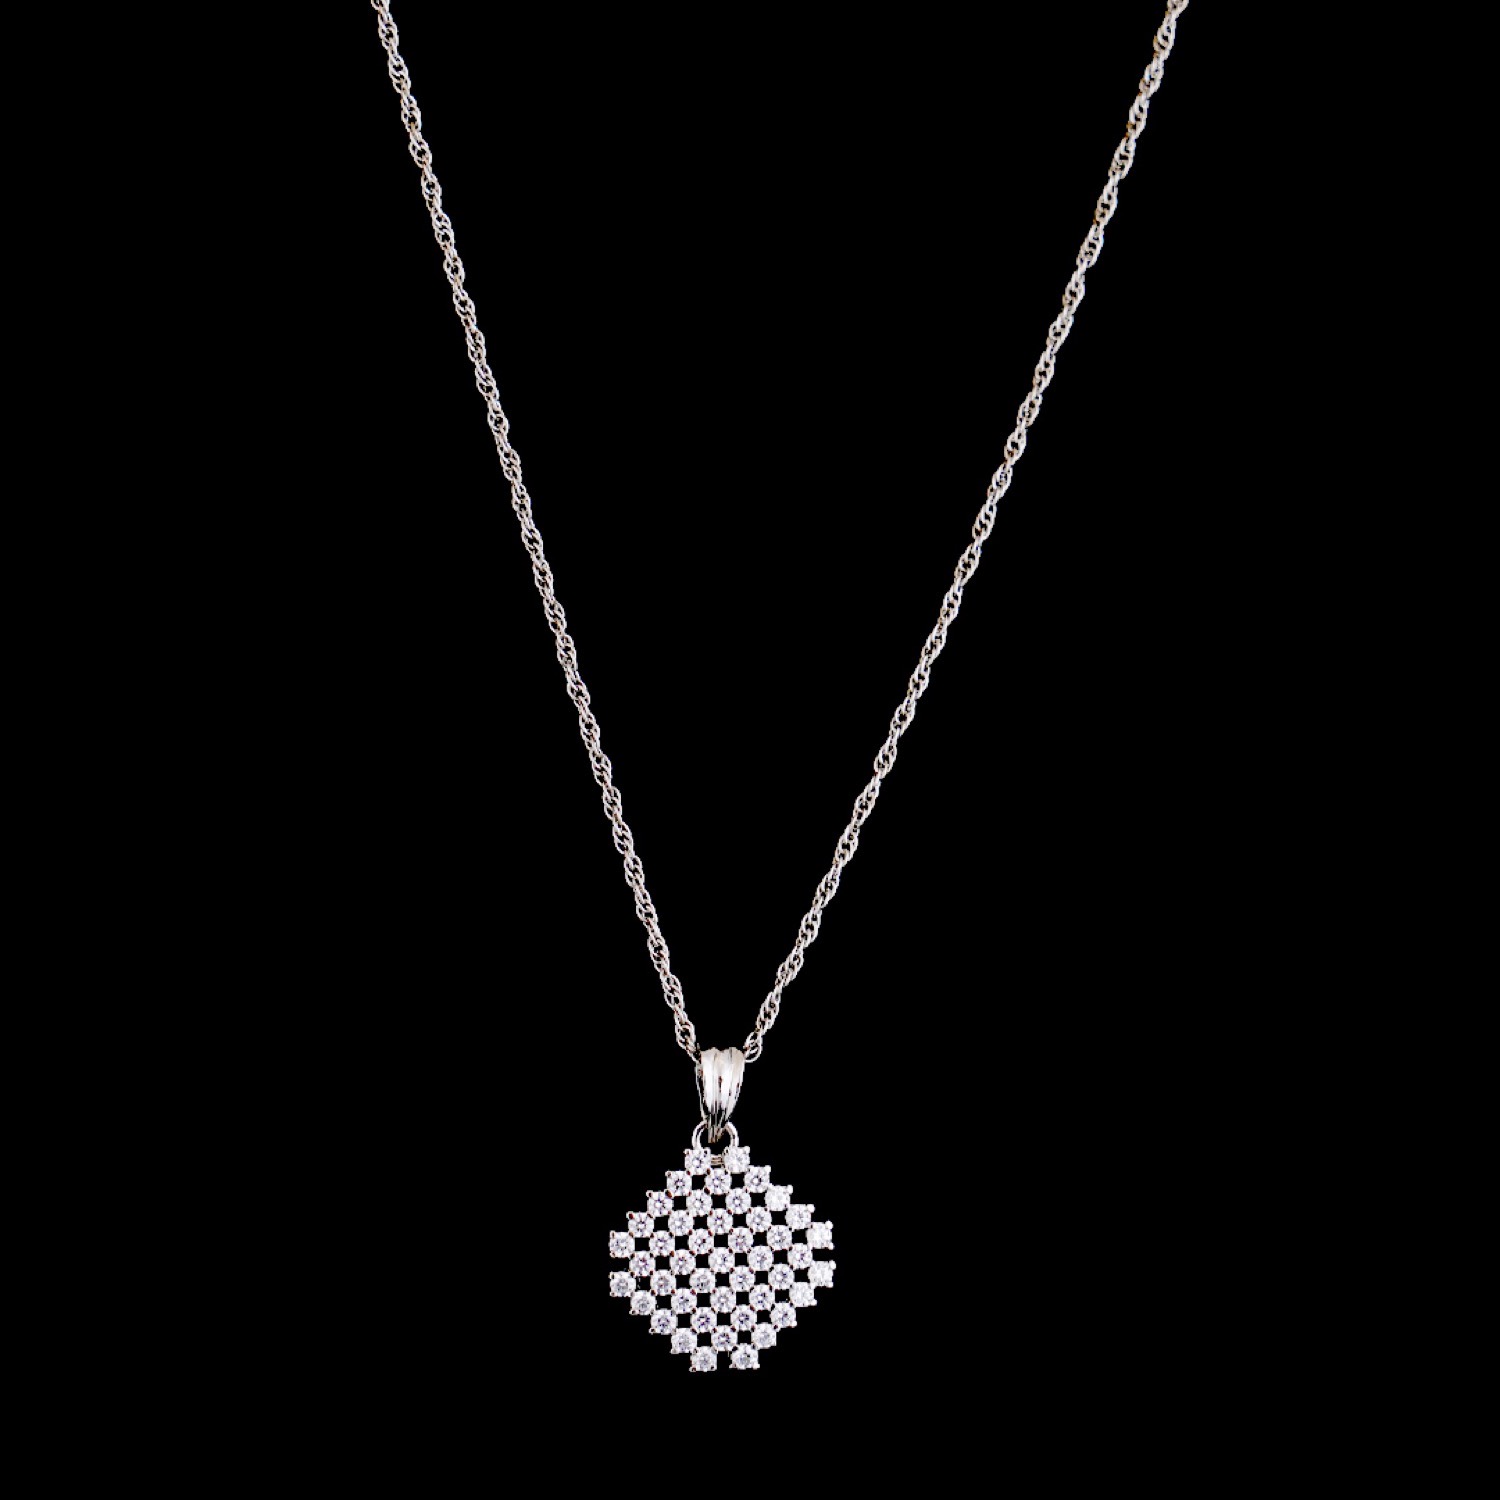 varam_swarovski_white_stone_grid_design_pendant_silver_chain_1-1